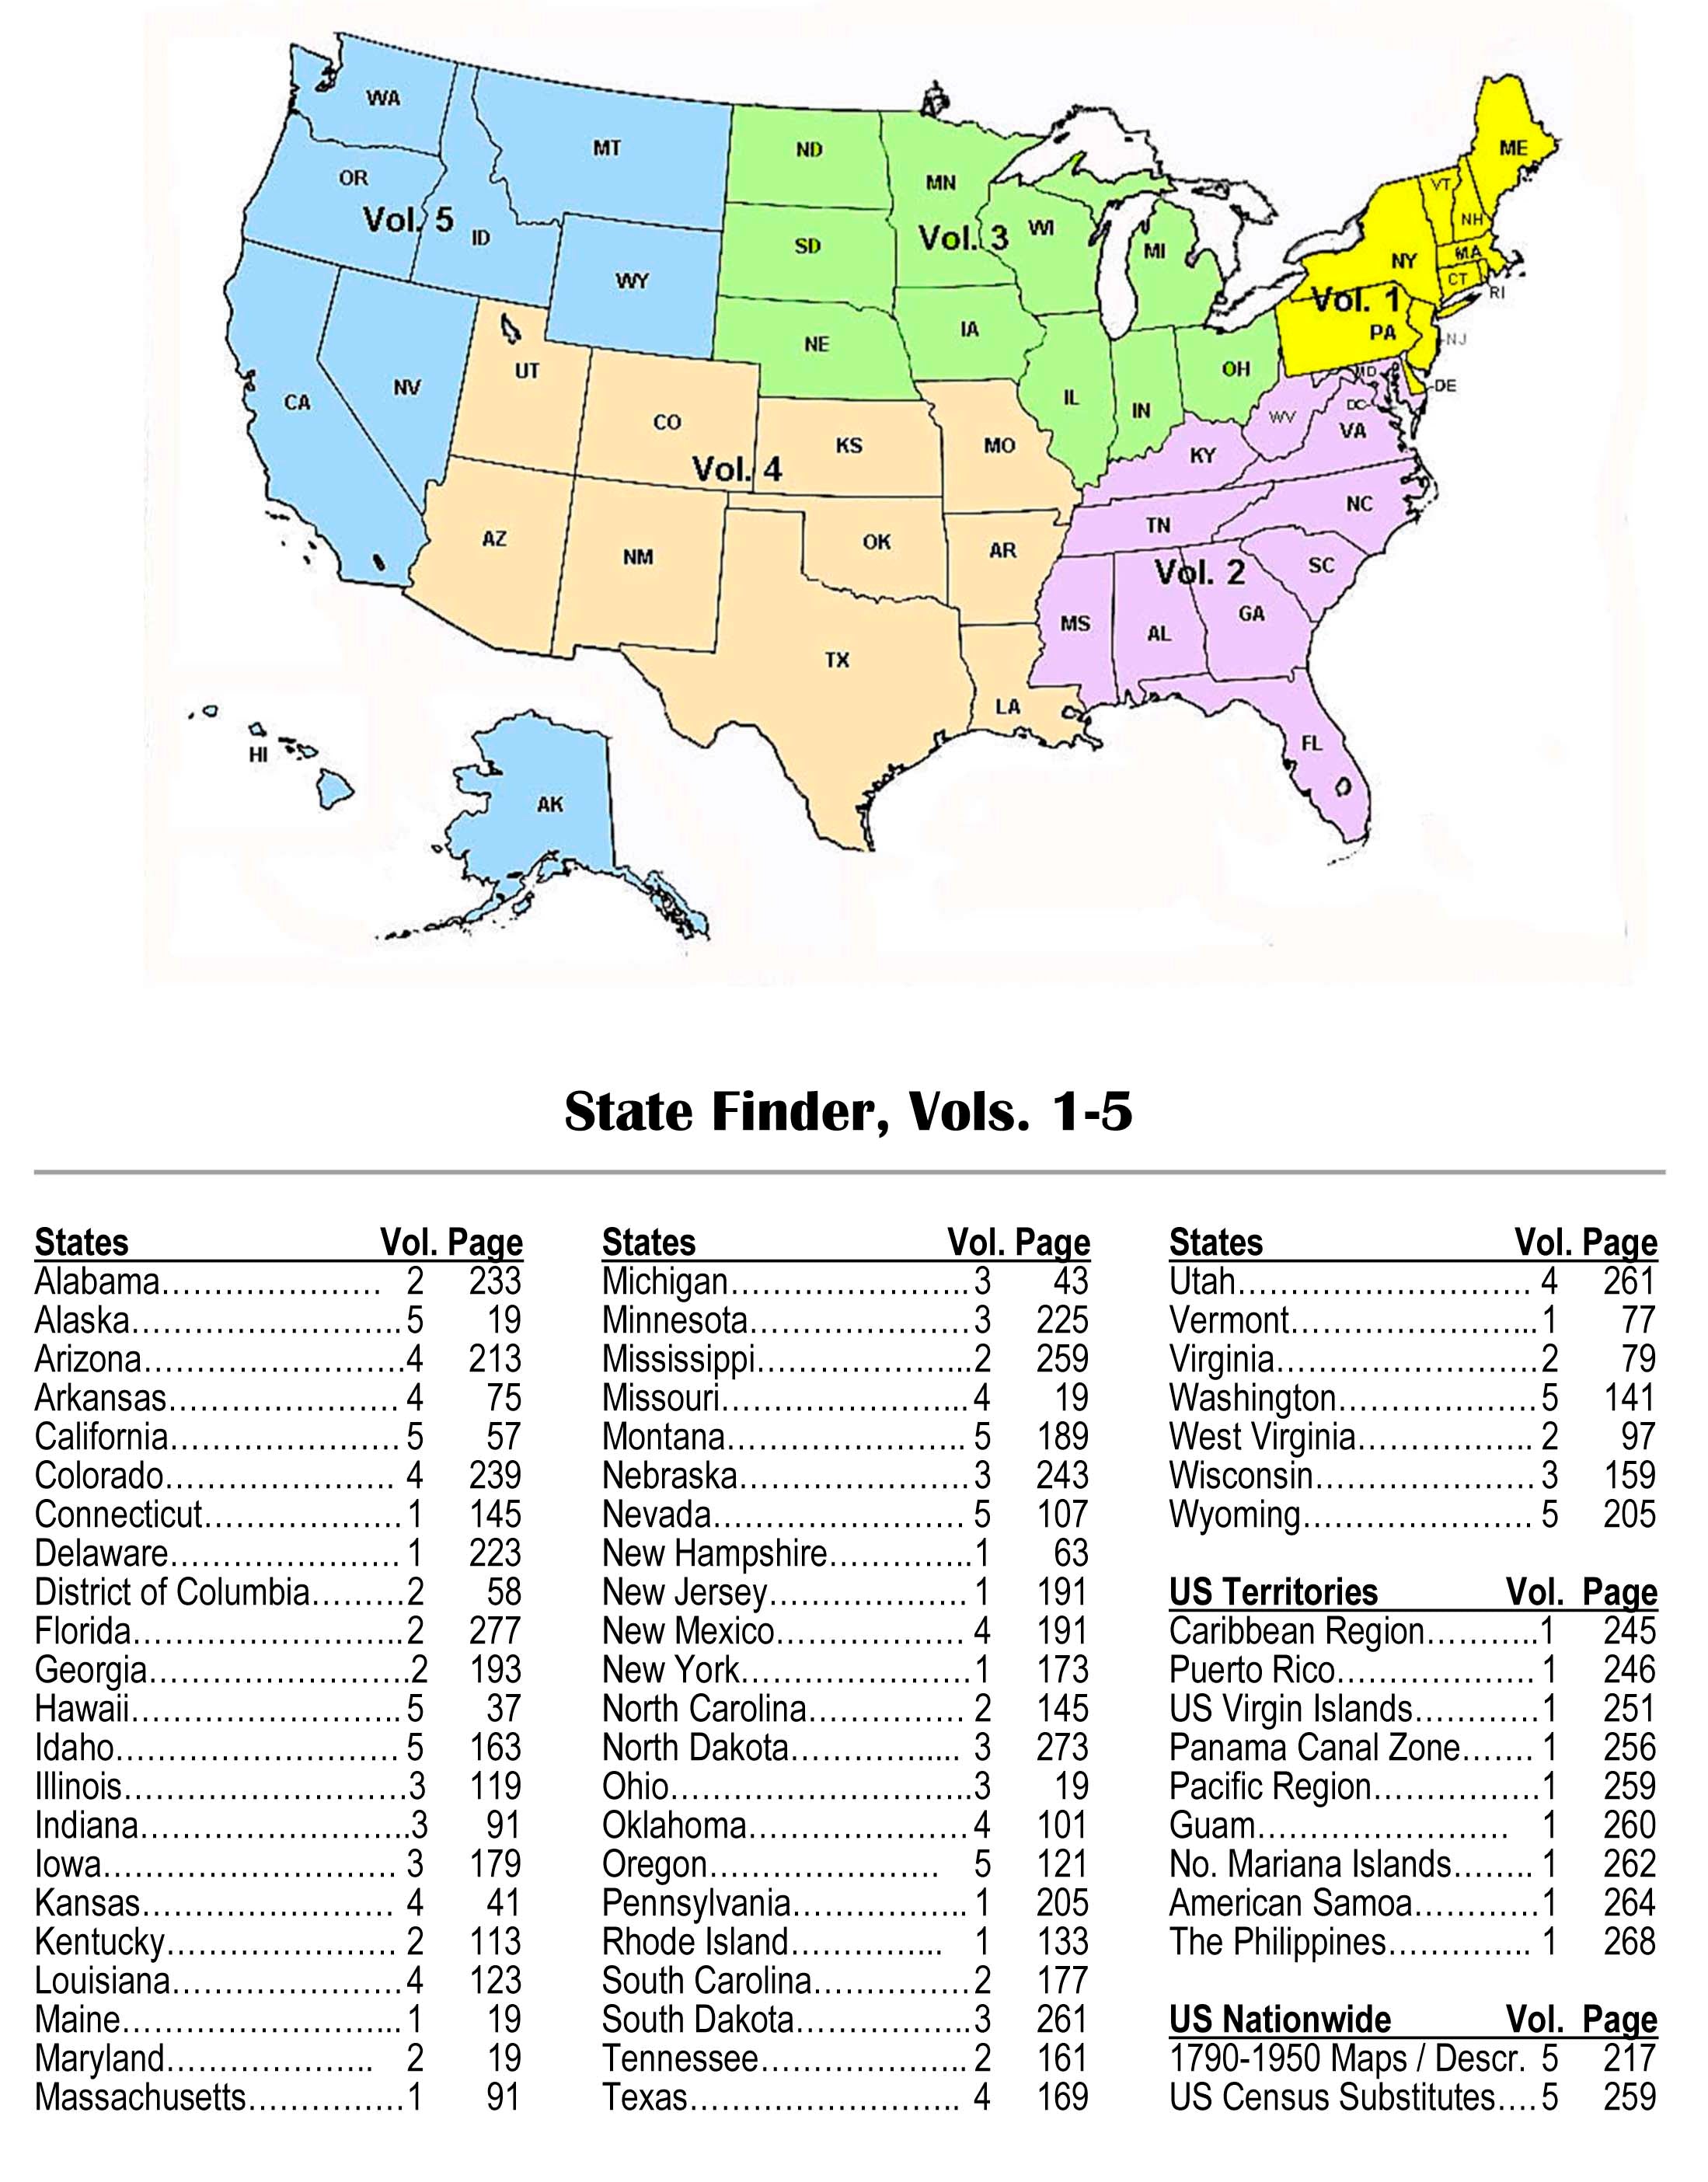 Census Substitutes & State Census Records, Third Edition, Volume 1 – Northeastern States & U.S. Territories - PDF eBook